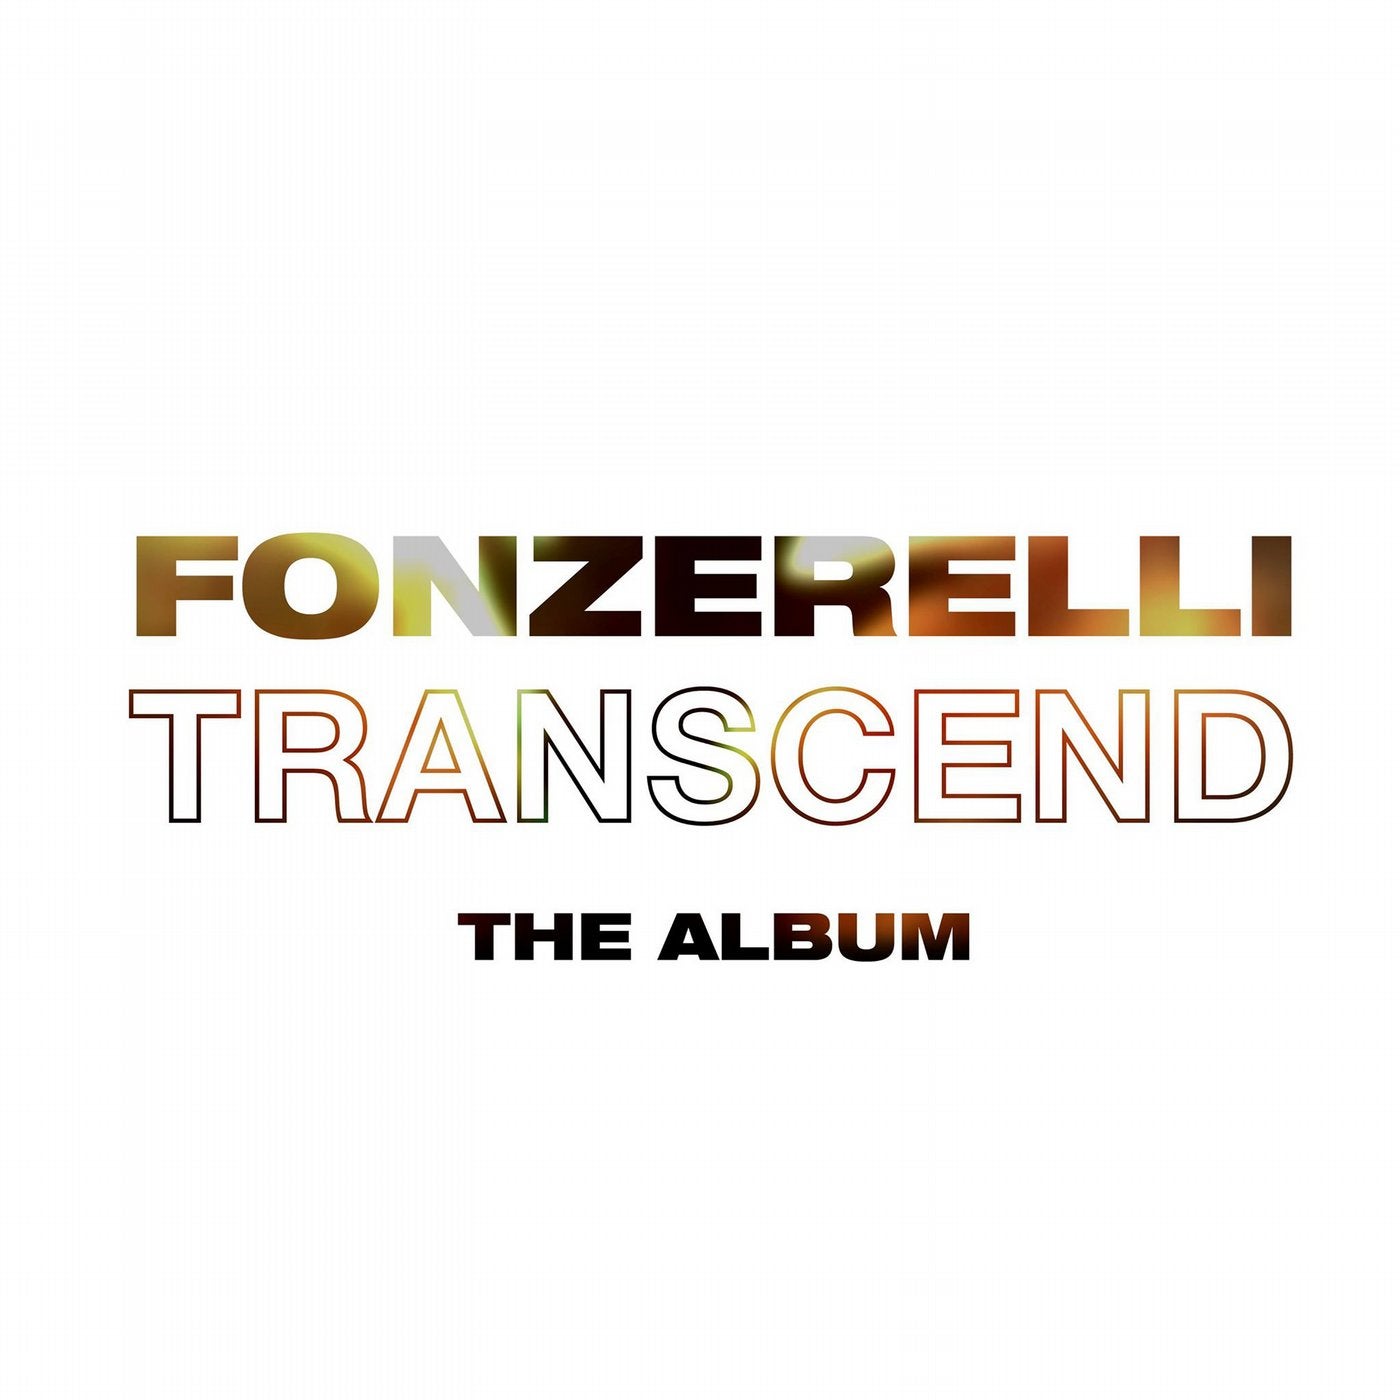 Transcend (The Album)